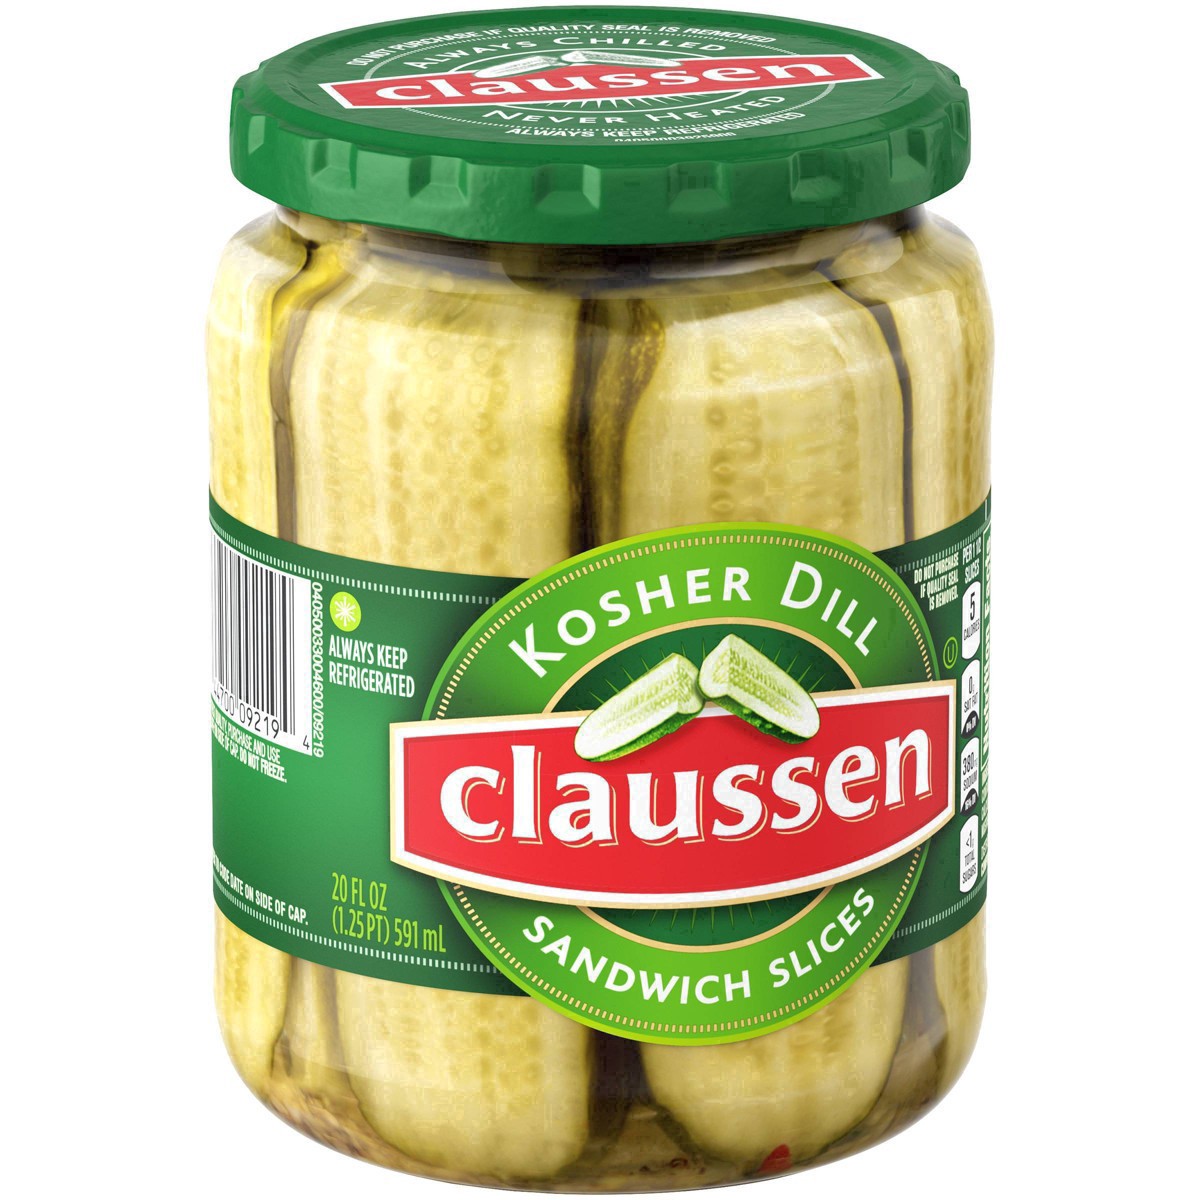 slide 103 of 144, Claussen Kosher Dill Pickle Sandwich Slices, 20 fl. oz. Jar, 20 fl oz